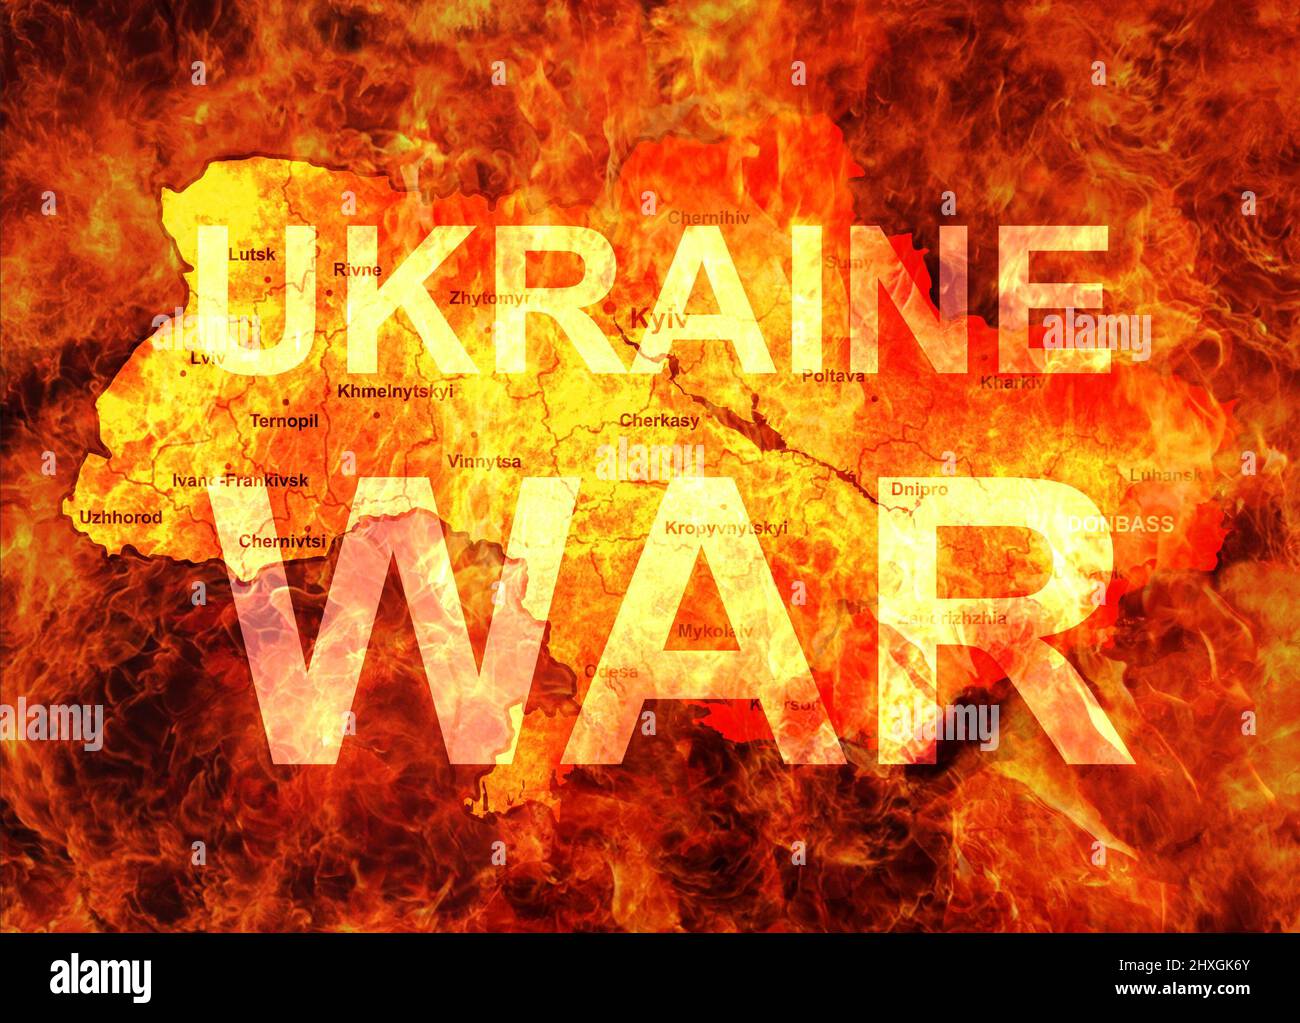 La guerra en Ucrania concepto, Rusia y Ucrania conflicto en el mapa ardiente. Bandera con territorio ucraniano en el fuego. Rusia contra Ucrania en llamas. Ilustración Foto de stock